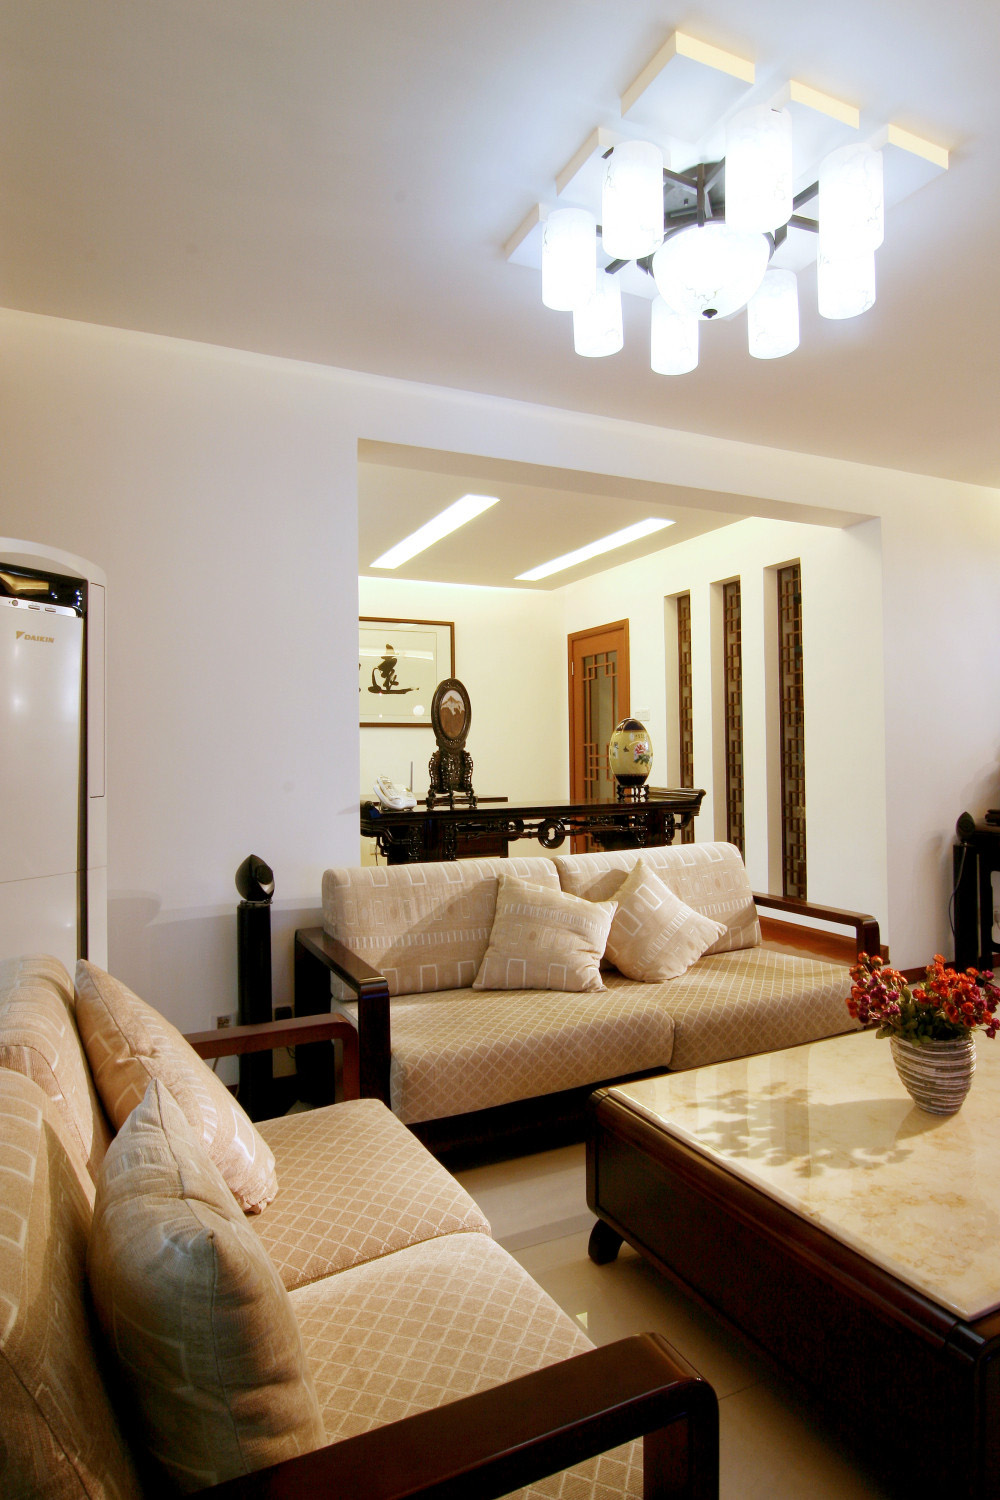 简约沙发与灯具搭配中式独有的红木家具，现代与古典的另类风格。